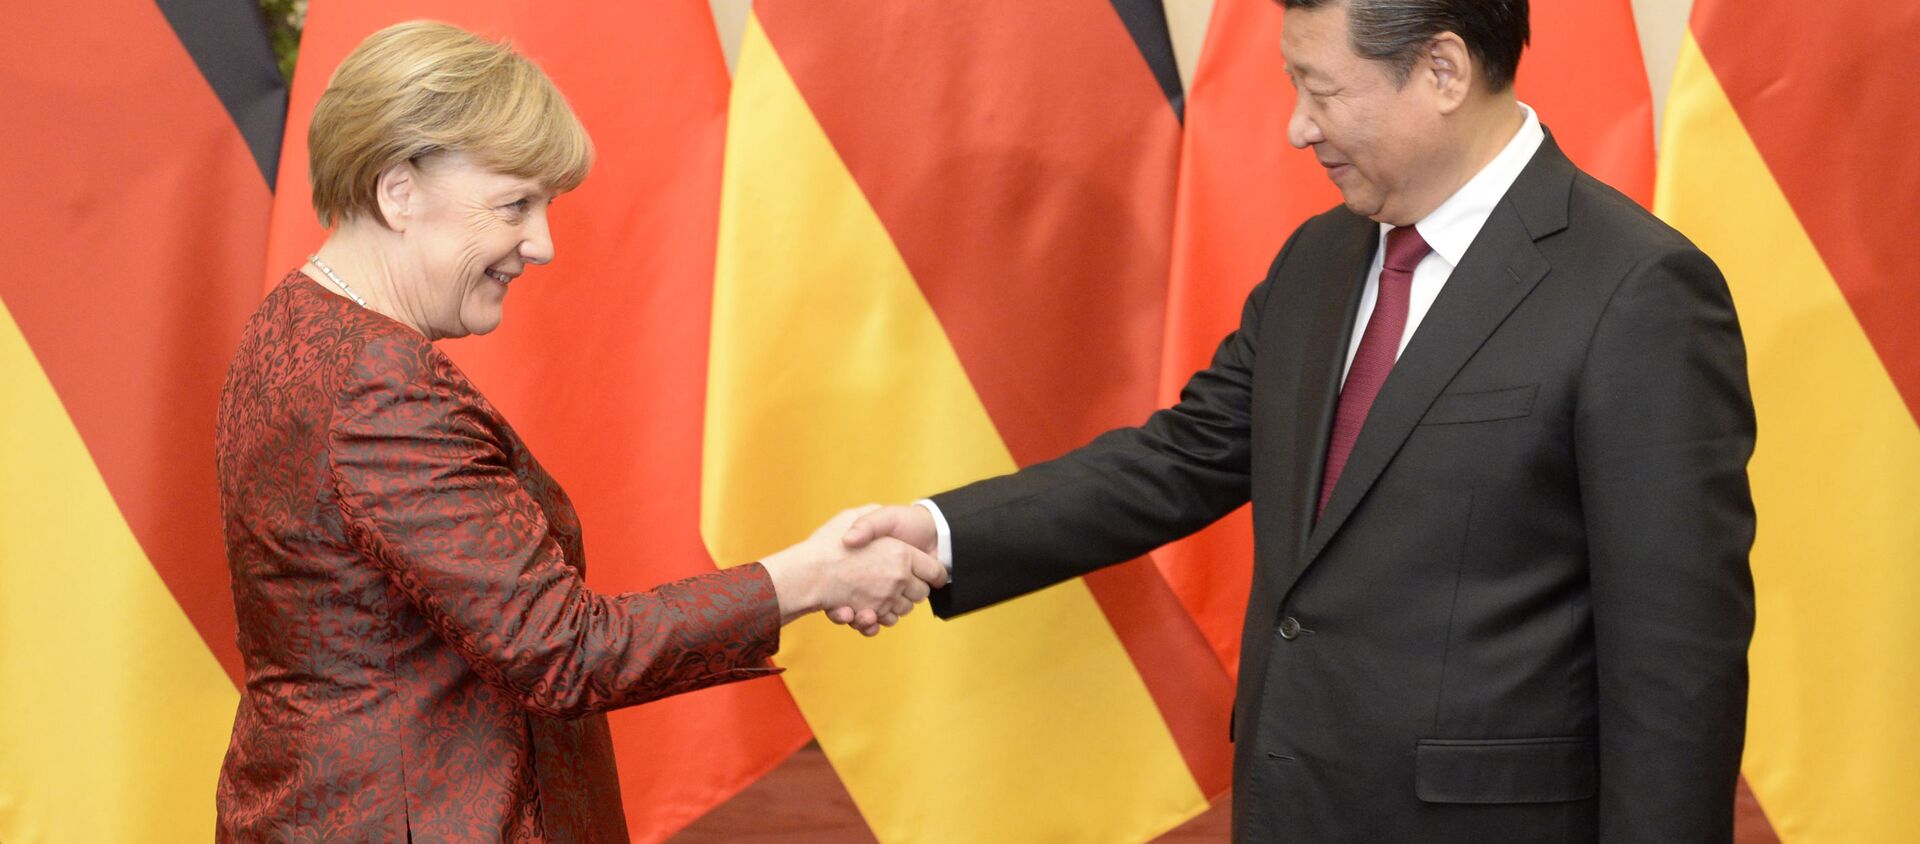 Bà Merkel và ông Tập Cận Bình. - Sputnik Việt Nam, 1920, 23.07.2020